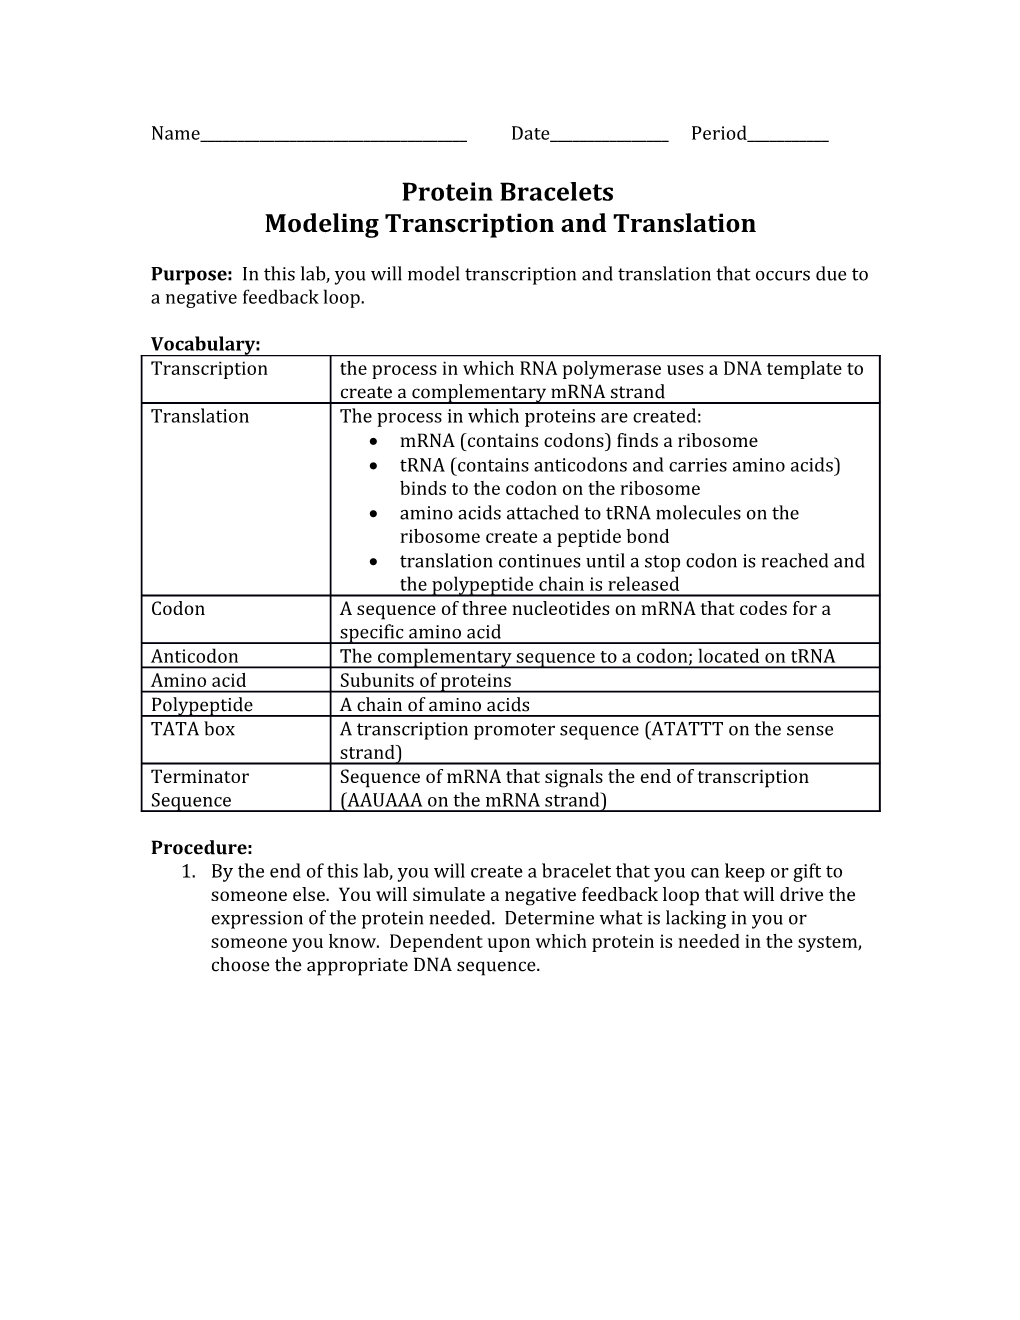 Modeling Transcription and Translation